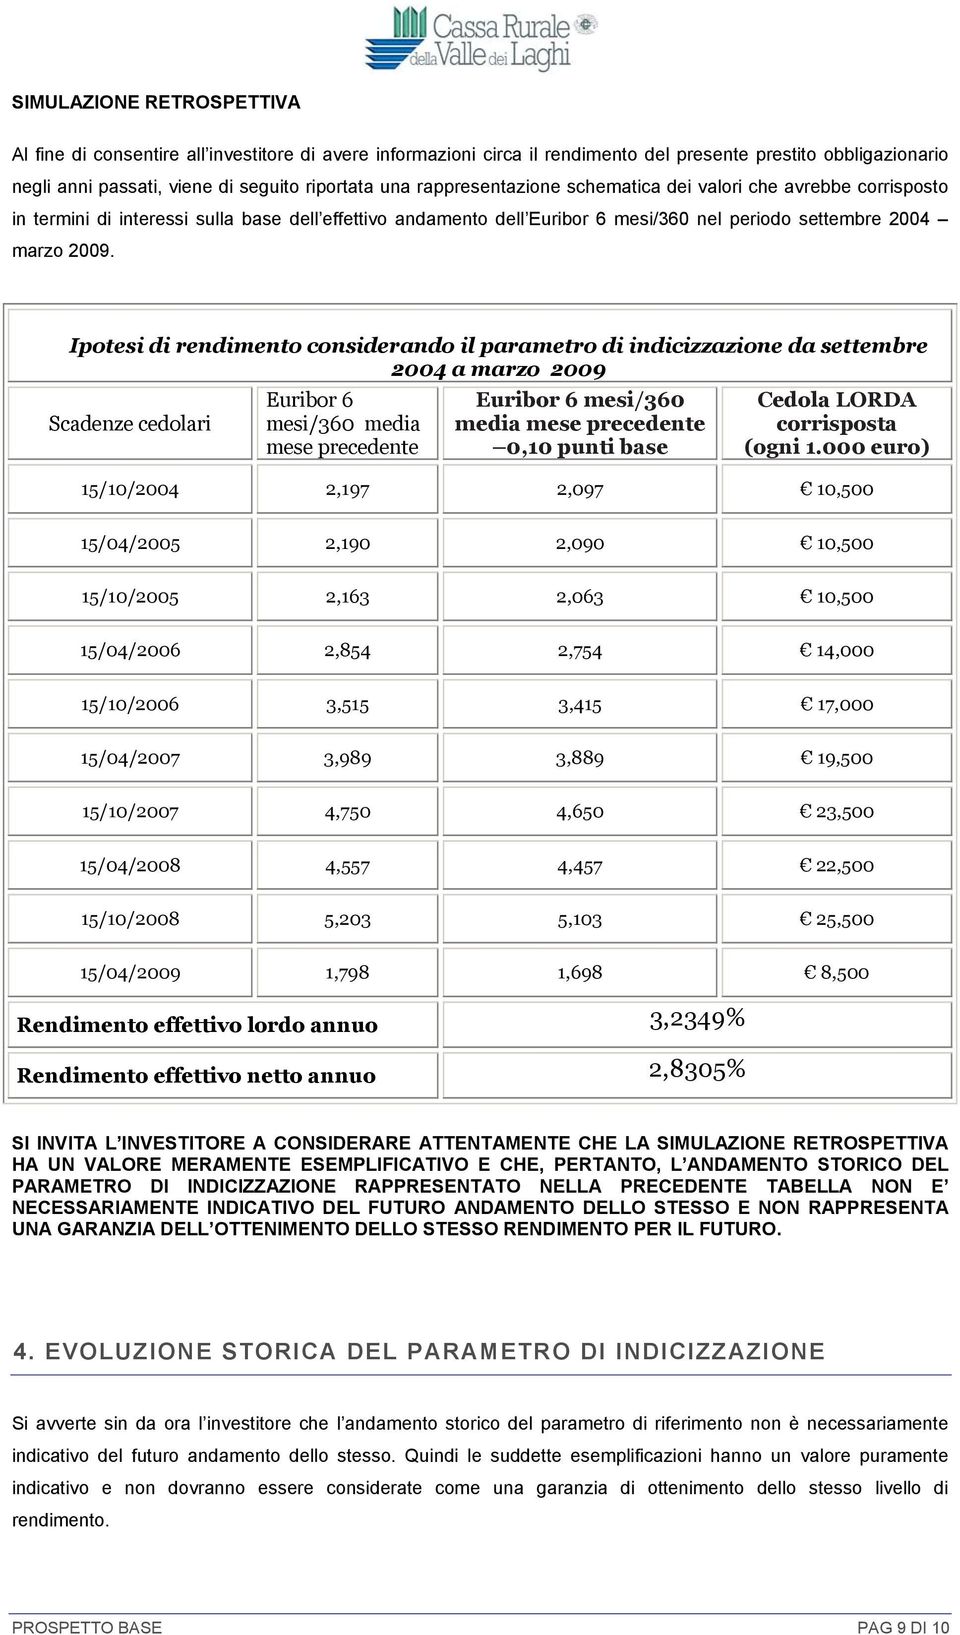 Ipotesi di rendimento considerando il parametro di indicizzazione da settembre 2004 a marzo 2009 Scadenze cedolari Euribor 6 mesi/360 media mese precedente Euribor 6 mesi/360 media mese precedente